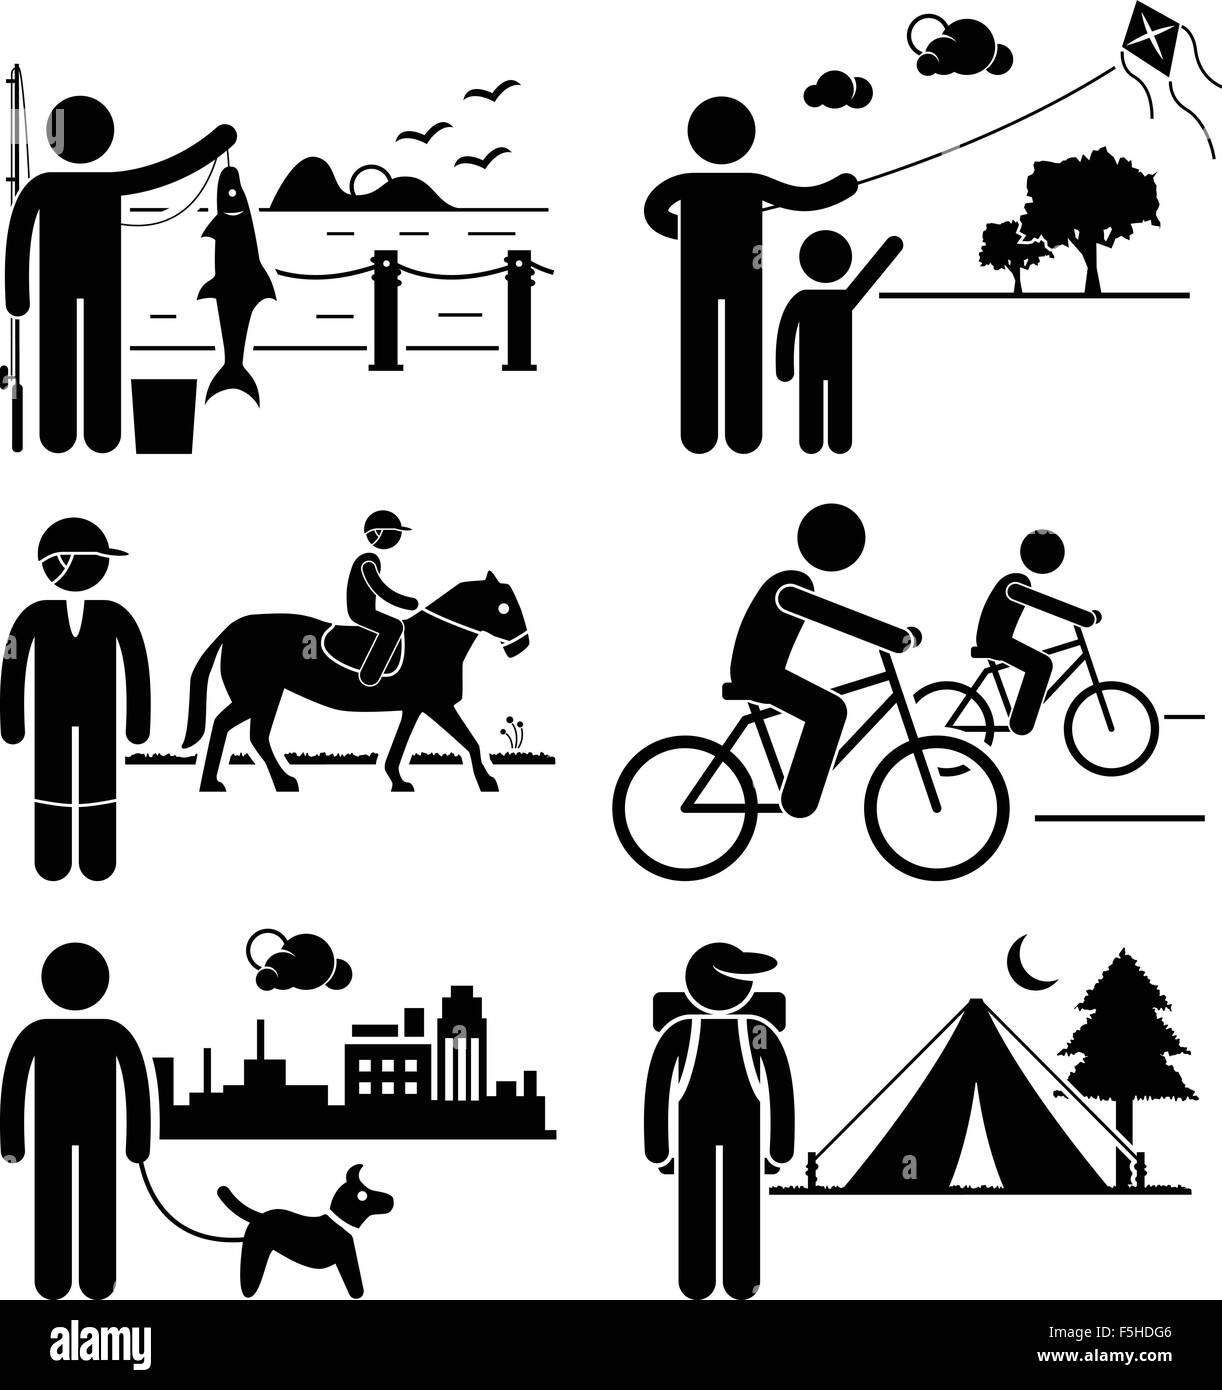 Freizeit-Outdoor-Freizeit-Aktivitäten - Angeln, Kite, Pferd Reiten, Radfahren, Hund wandern, Camping - Strichmännchen-Piktogramm Stock Vektor